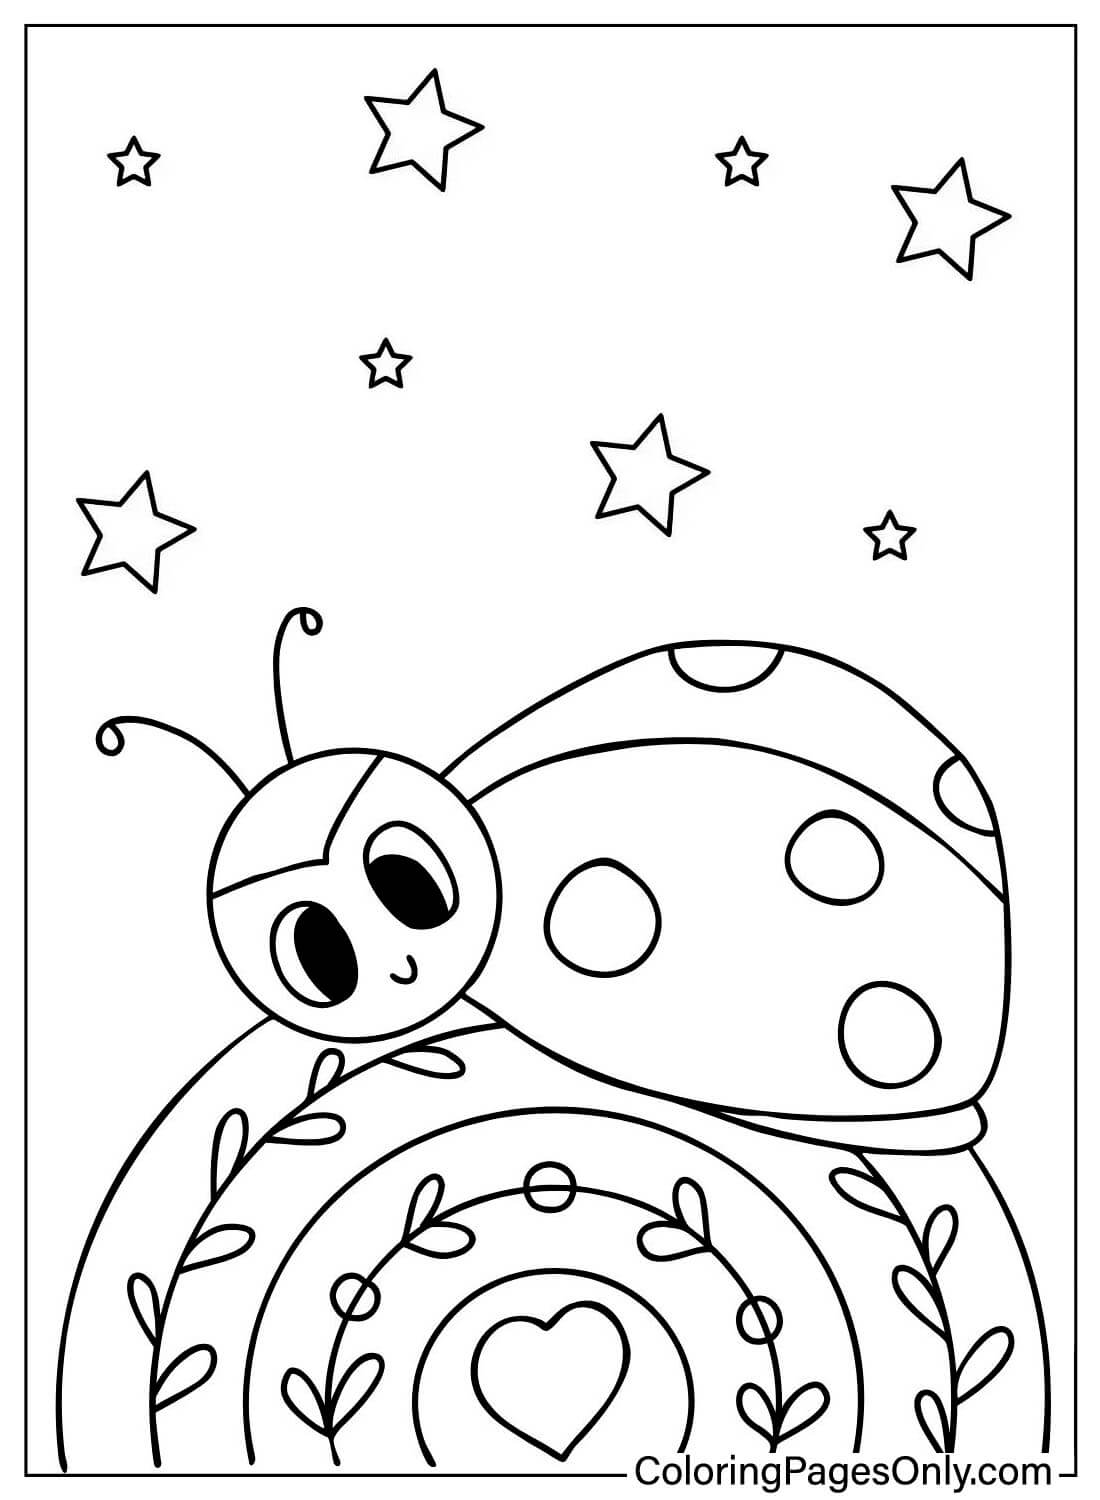 Página para colorear de Mariquita en el arcoíris de Ladybug